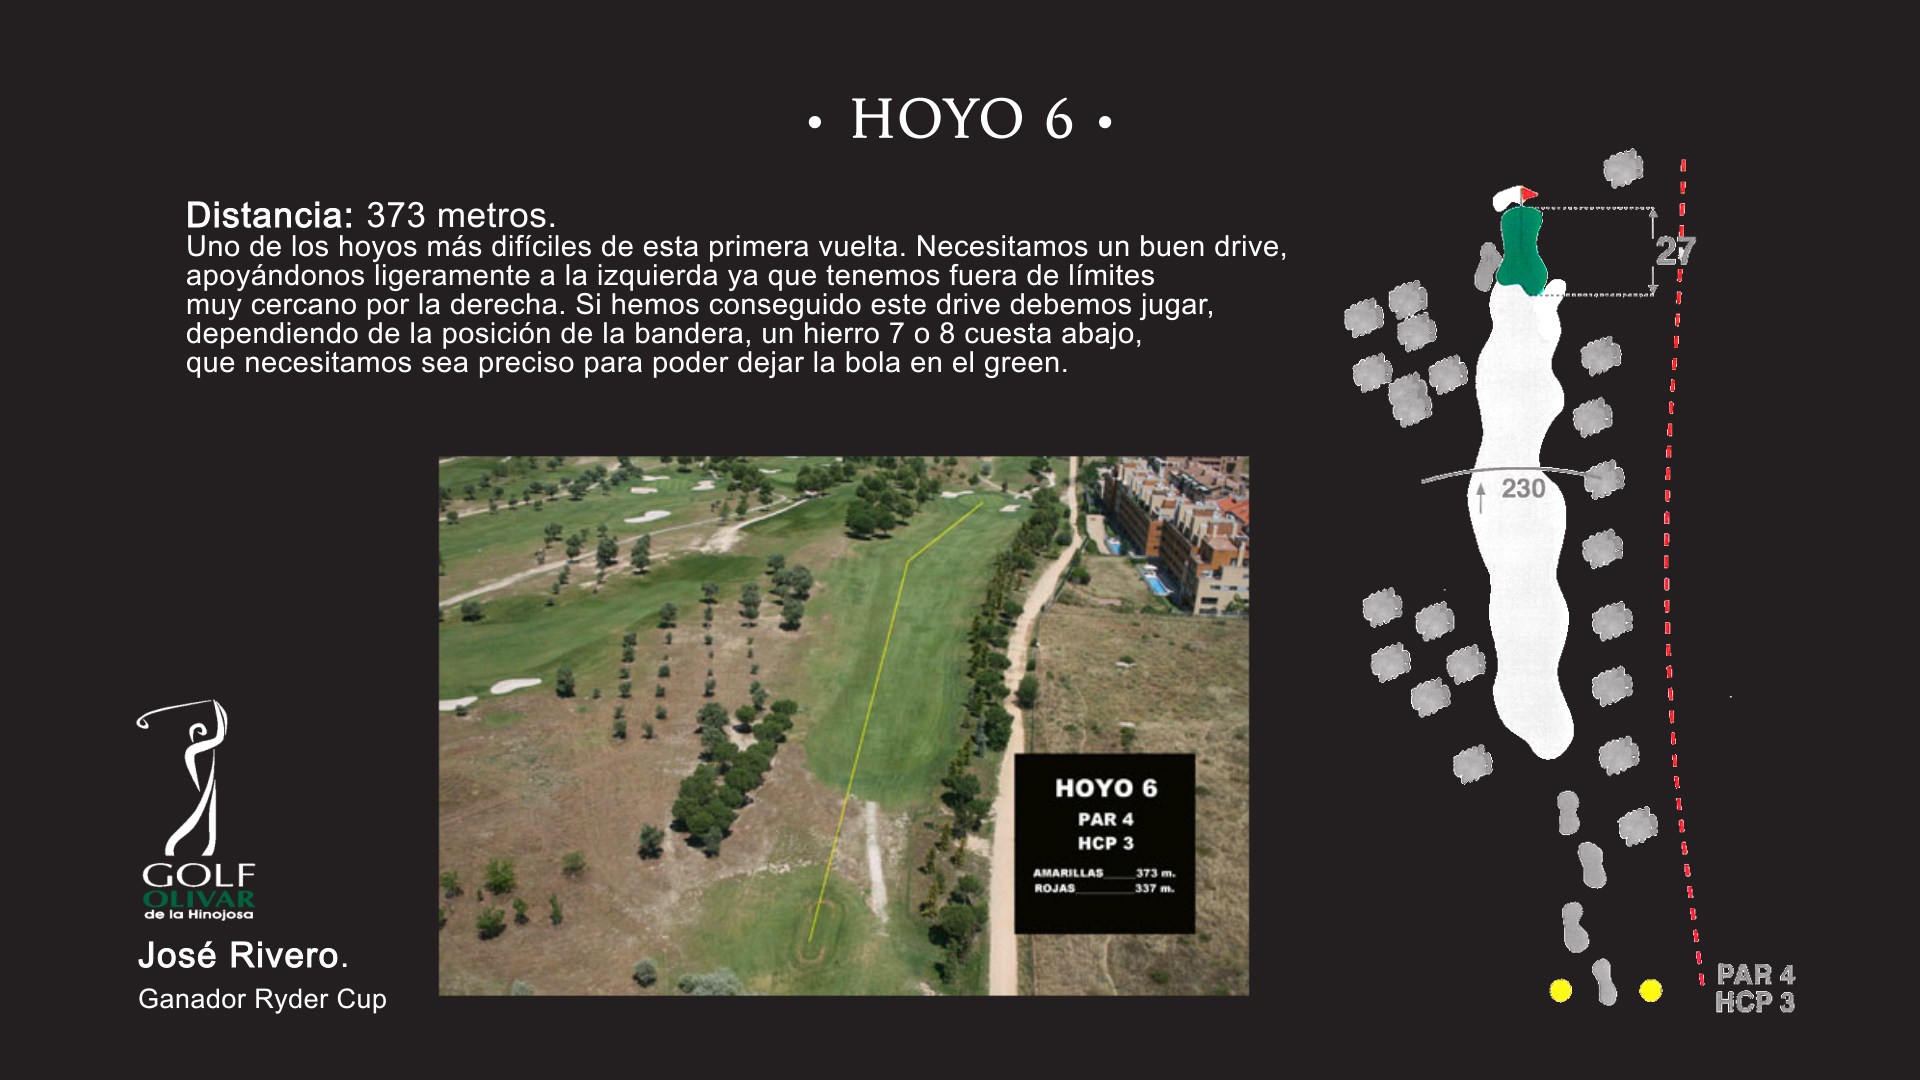 Hoyo 6 Olivar de la Hinojosa